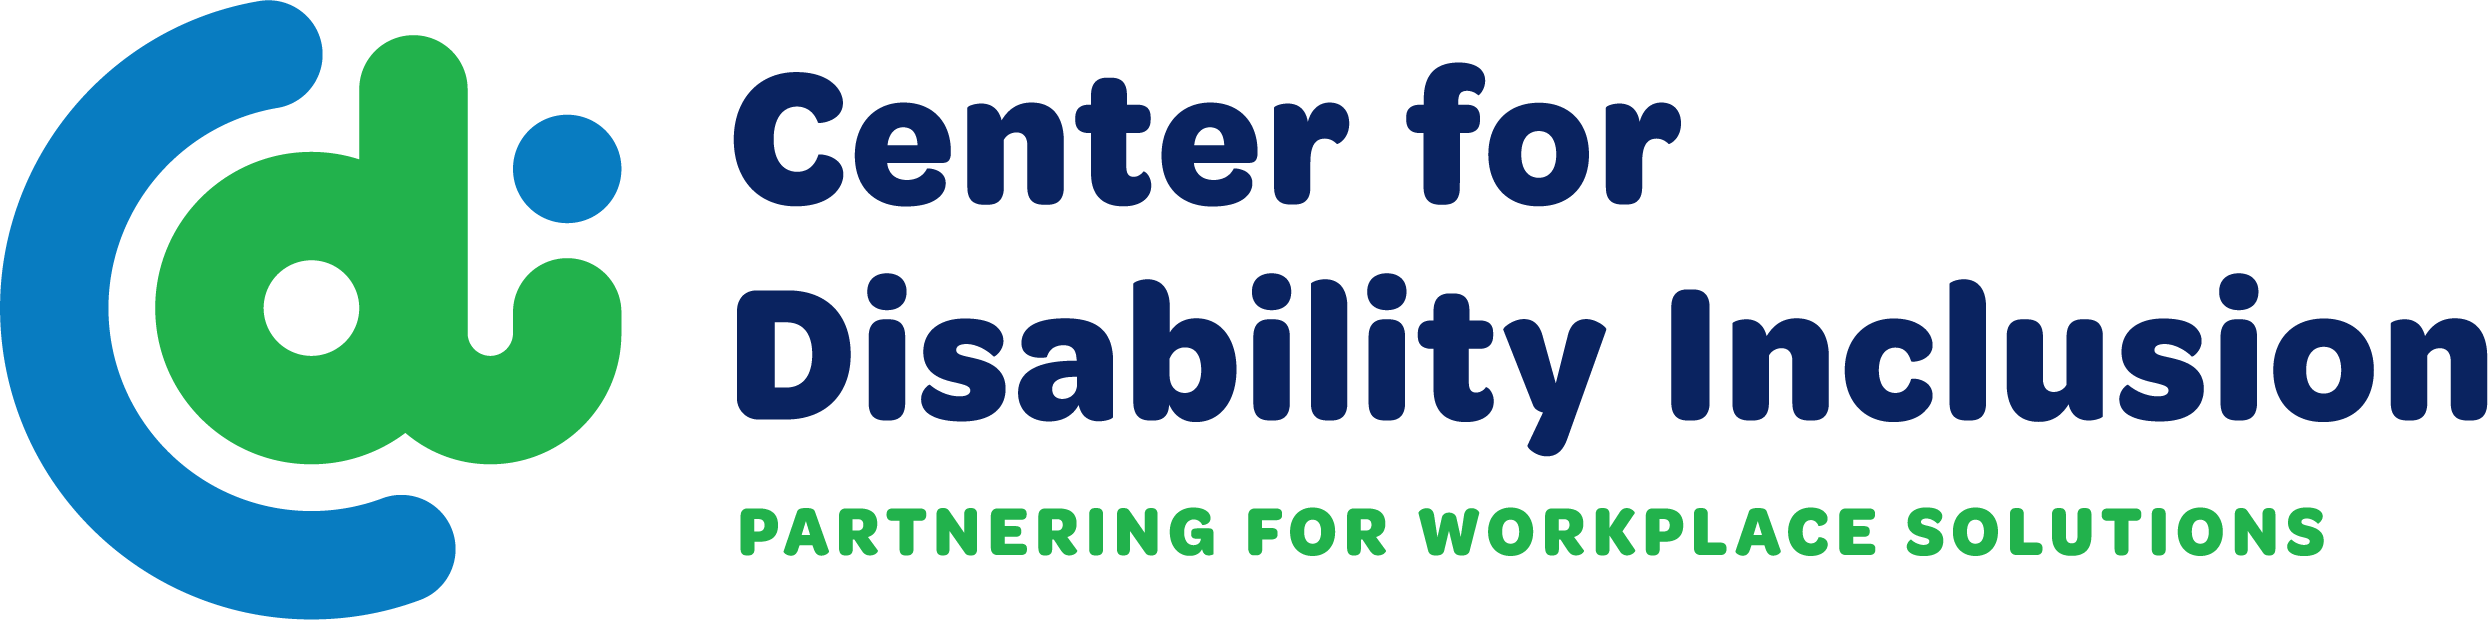 Centro para la inclusión de la discapacidad